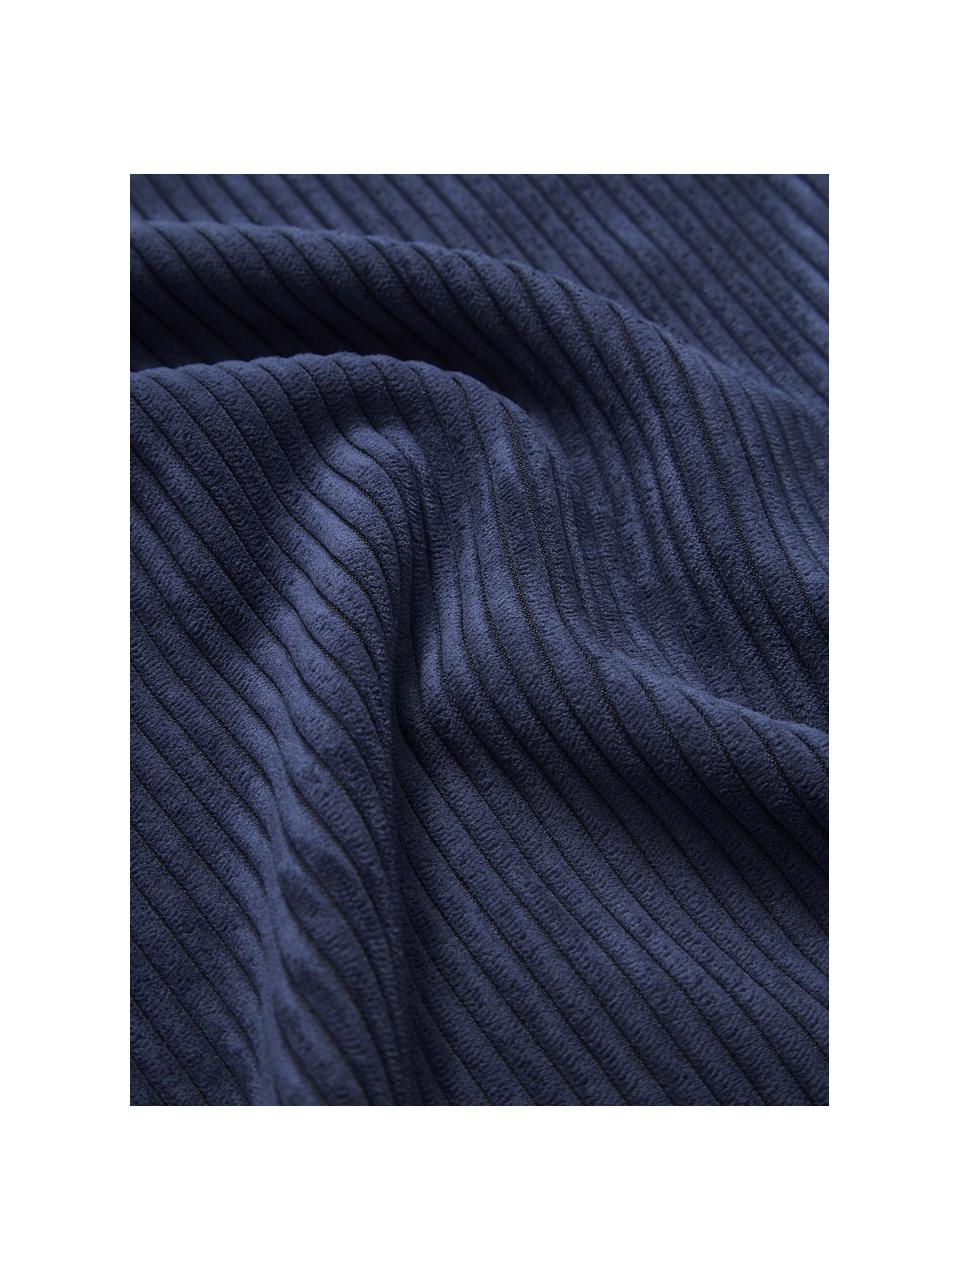 Geweven fluwelen kussenhoezen Carter met gestructureerde oppervlak, 2 stuks, 88% polyester, 12% nylon, Donkerblauw, beige, B 45 x L 45 cm